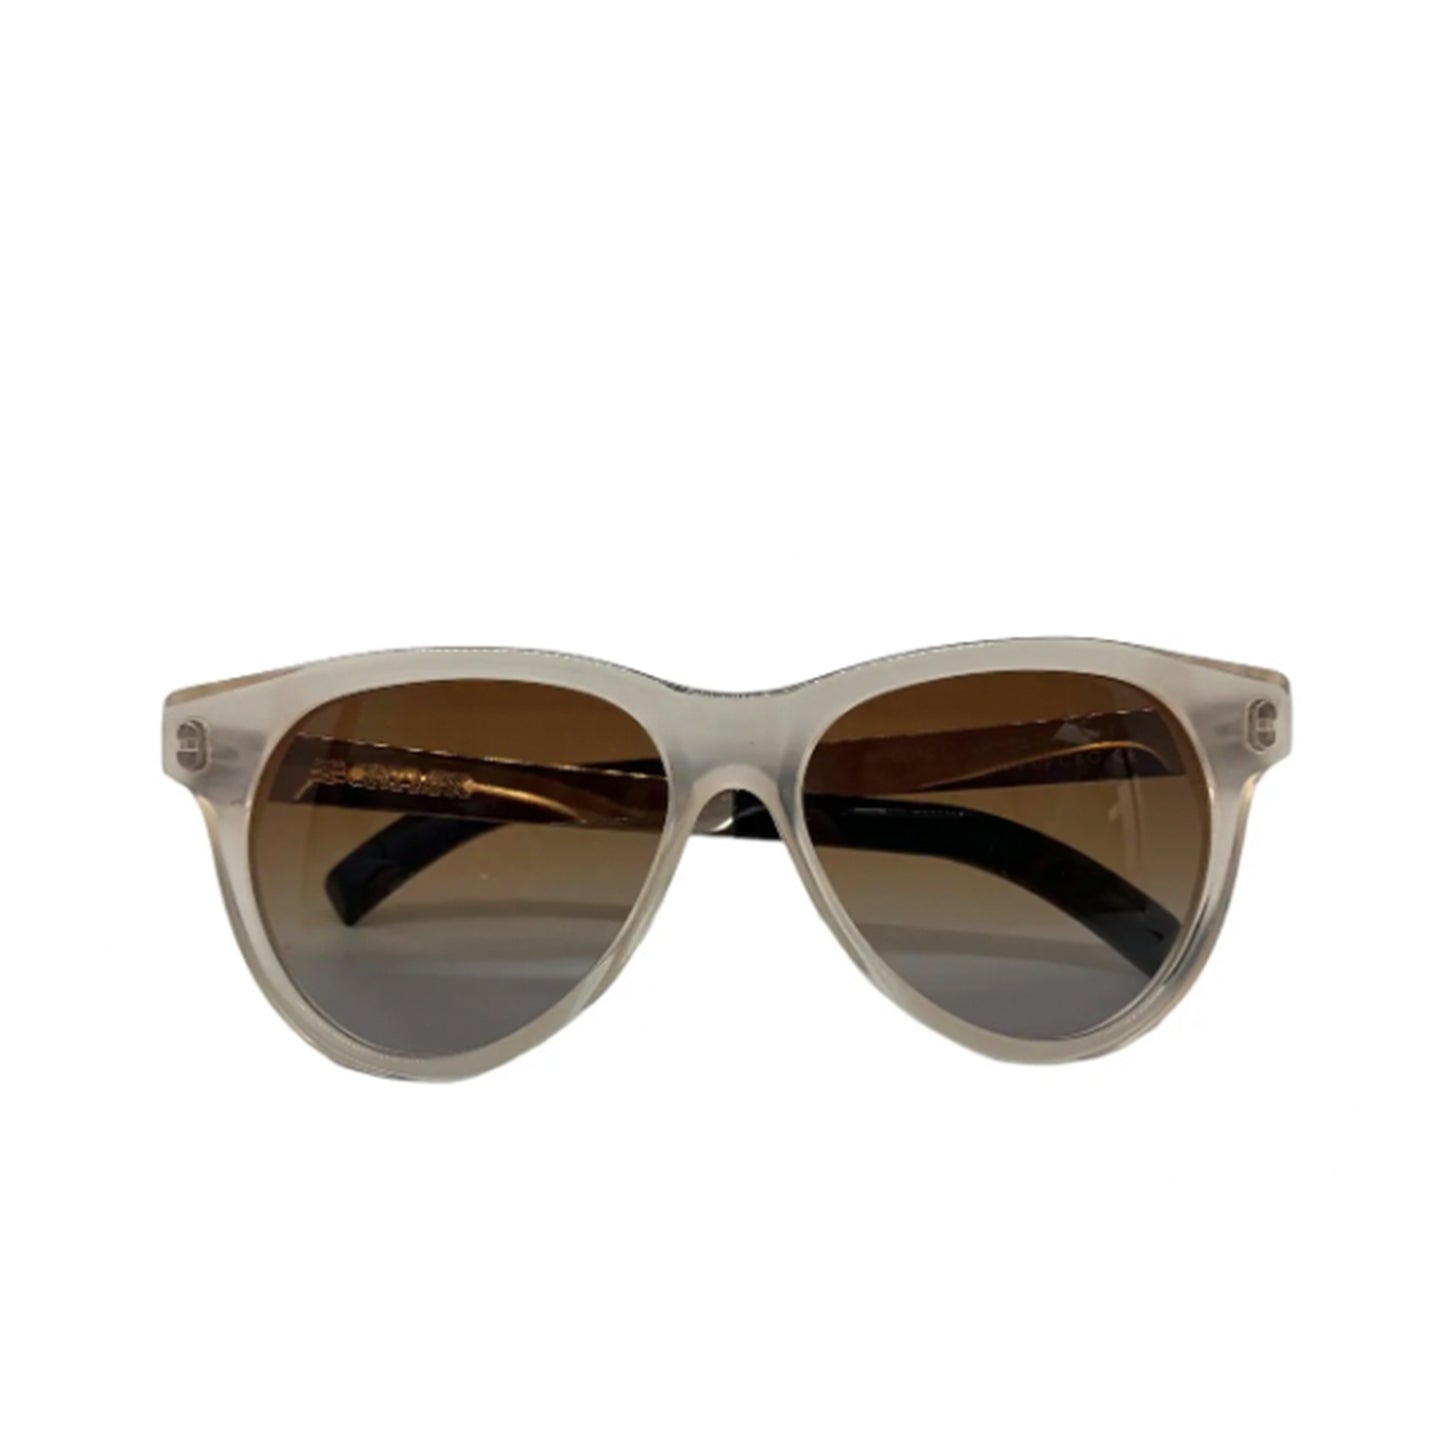 Cutler & Gross Transparent Sunglasses